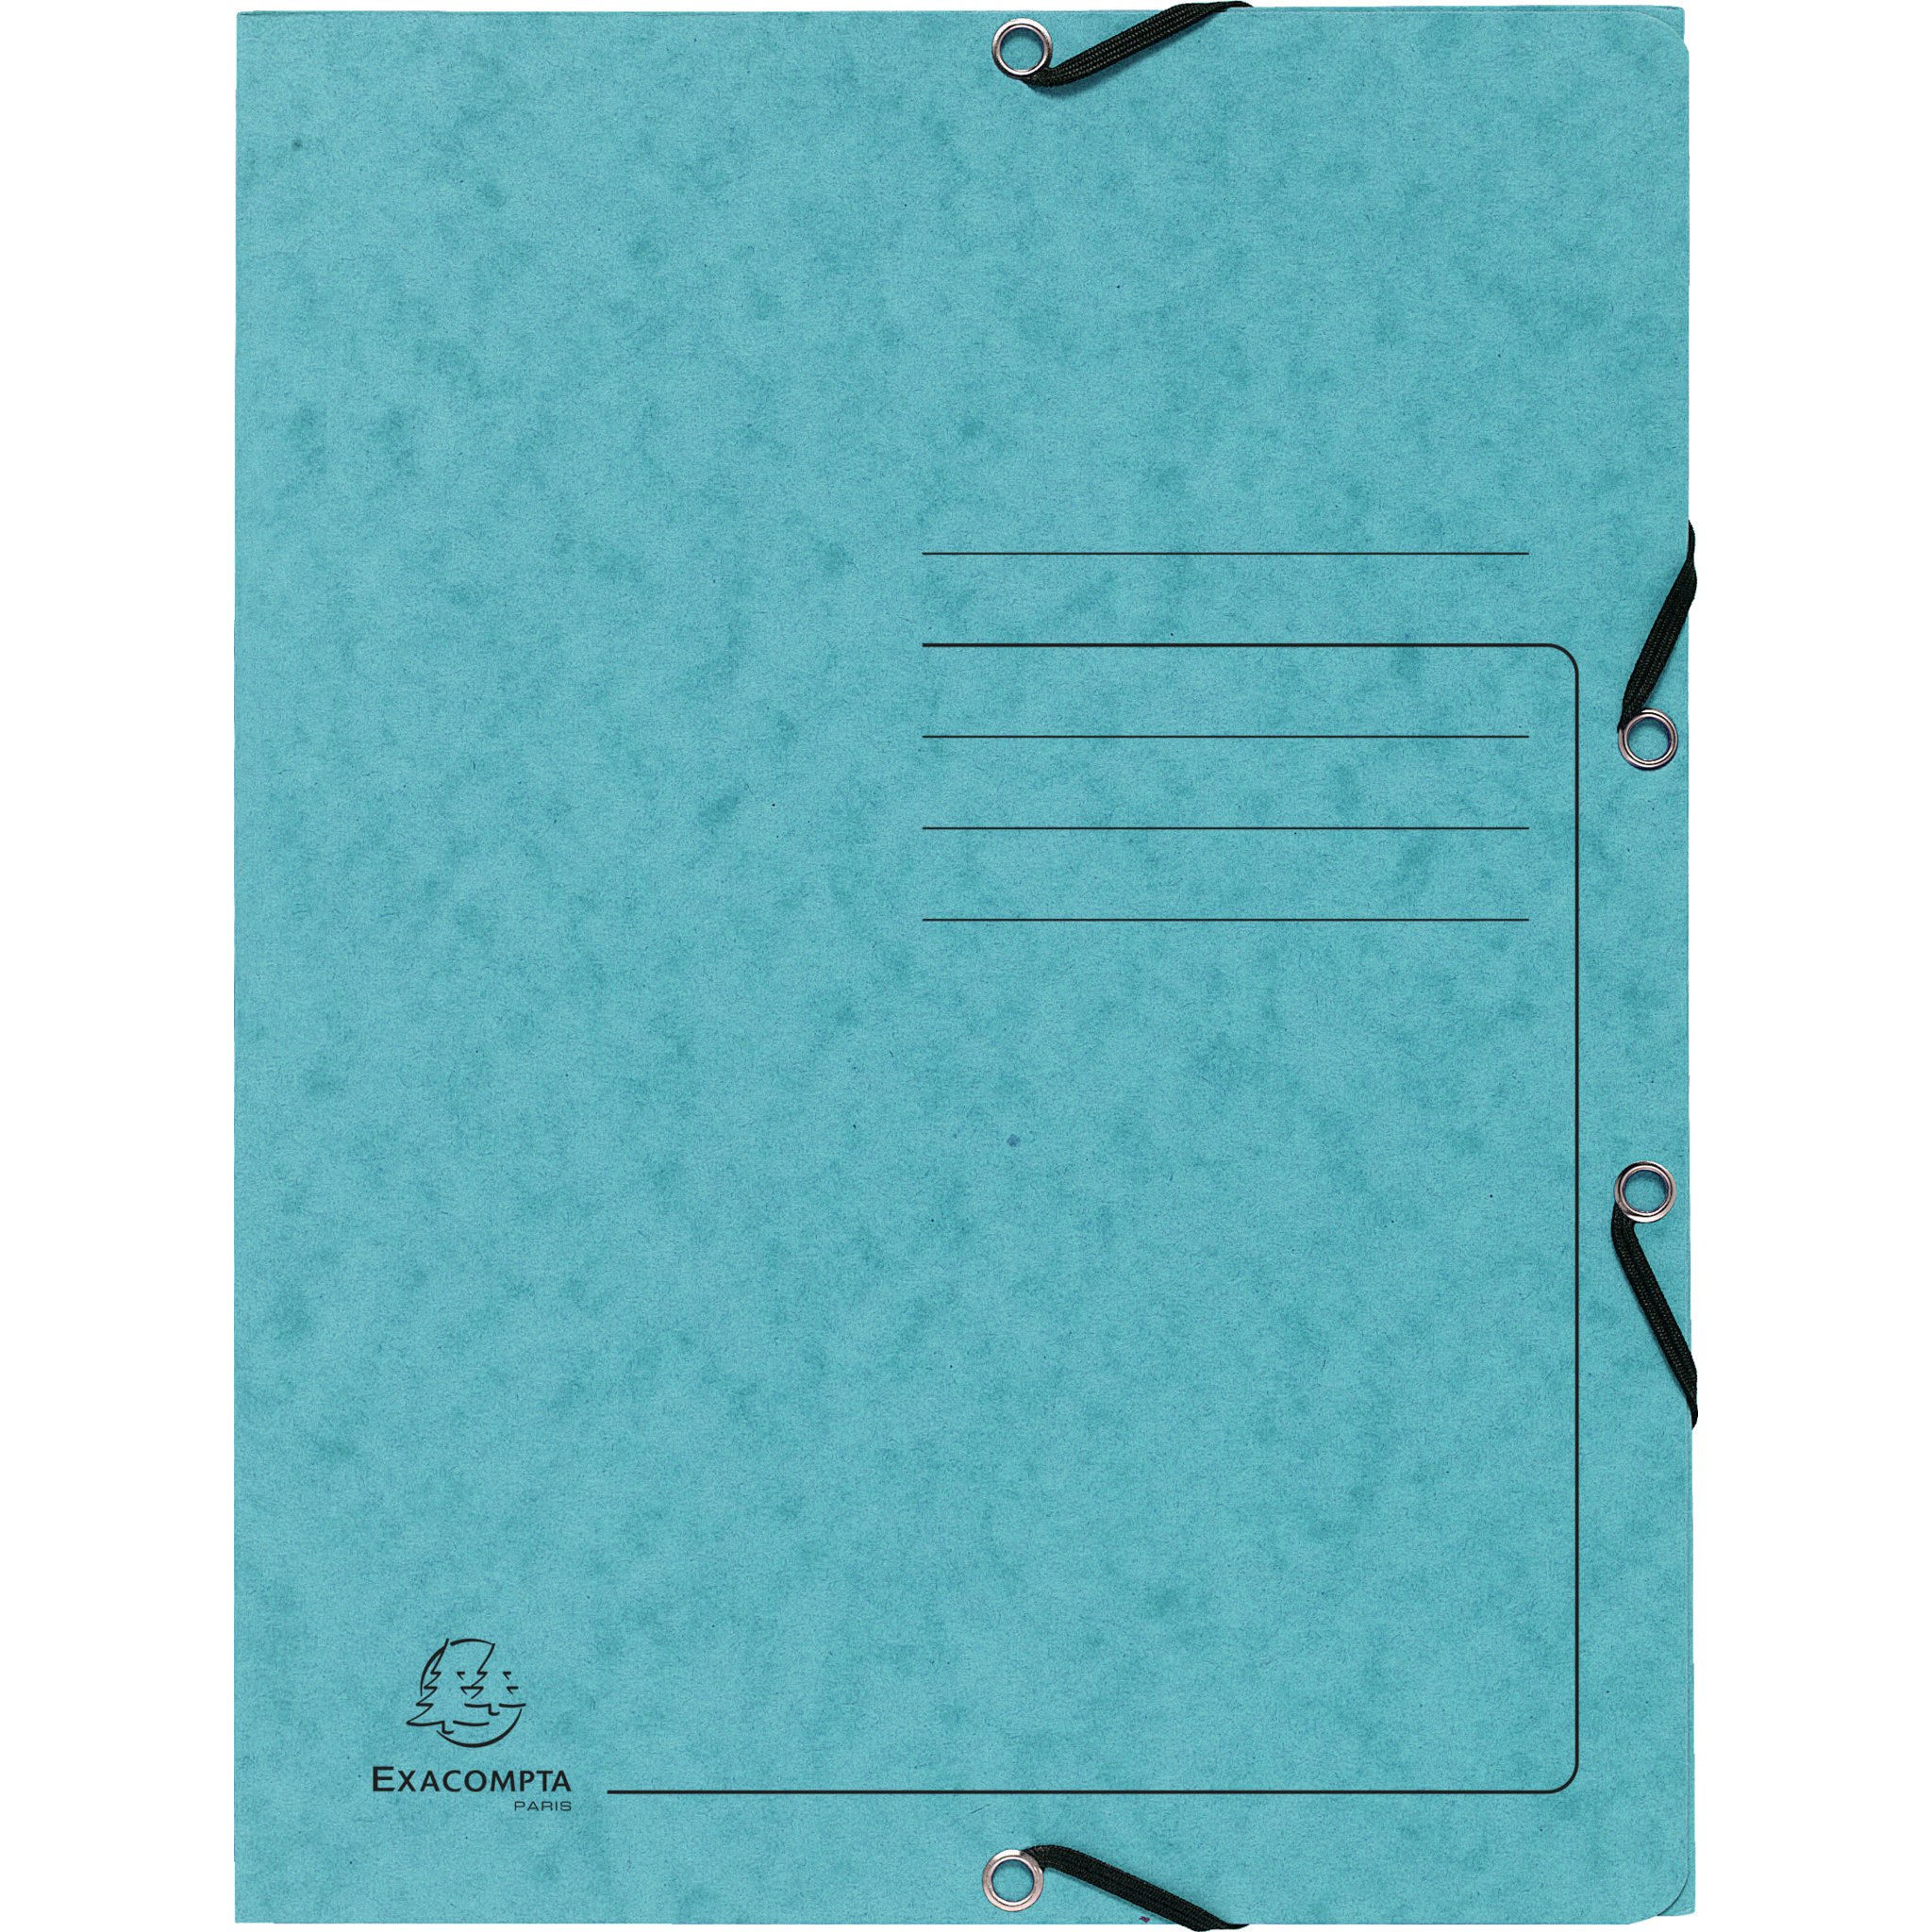 EXACOMPTA Sammelmappe mit Gummizug und 3 Klappen aus Colorspan-Karton 355g/m2 - A4 - Türkis